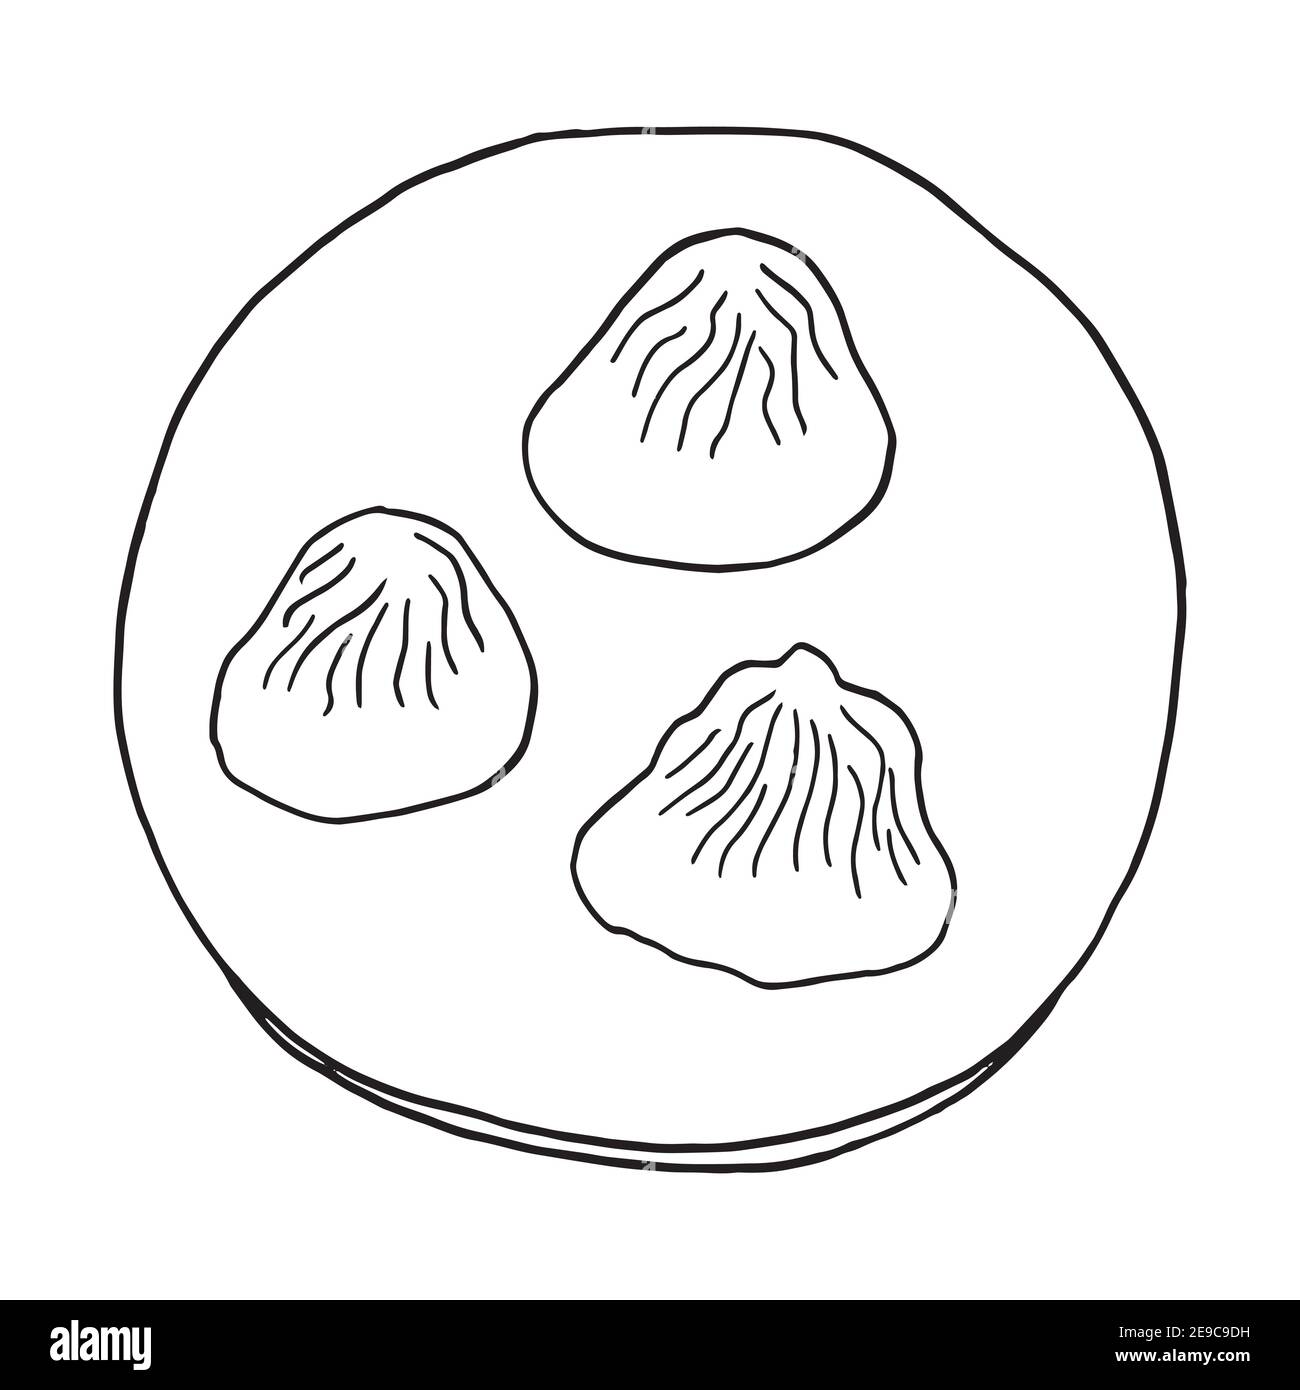 Handgezeichnete Kritzelknödel Xiao Long Bao. Chinesisches Gericht. Design Skizzenelement für Menü Café, Restaurant, Etikett und Verpackung. Vektorgrafik Stock Vektor